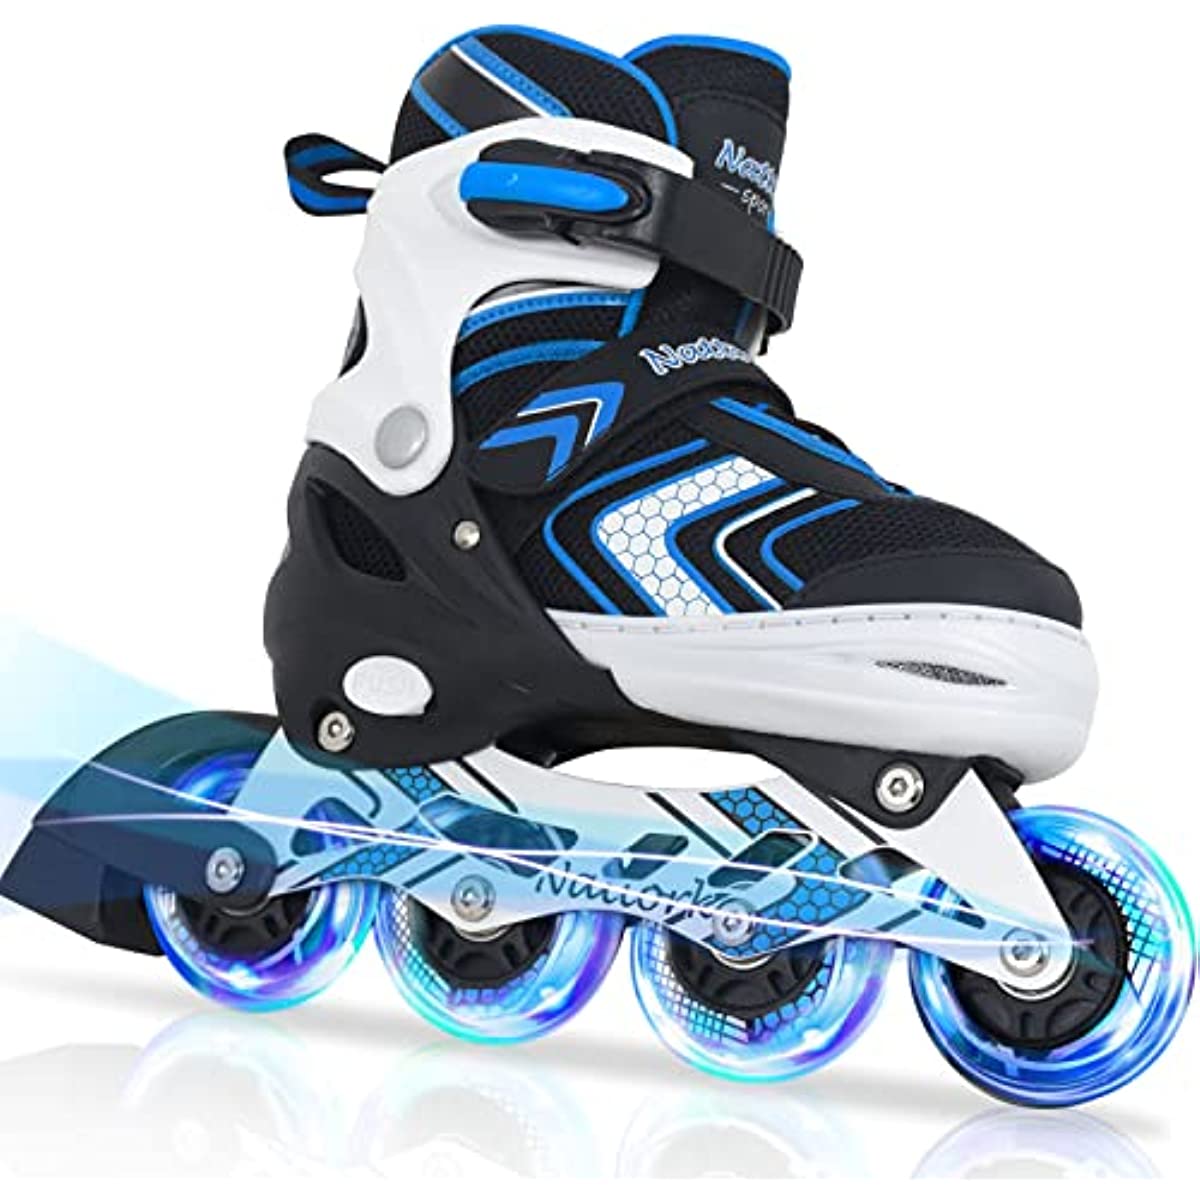 Nattork Adjustable Inline Skates for Kids - Blue